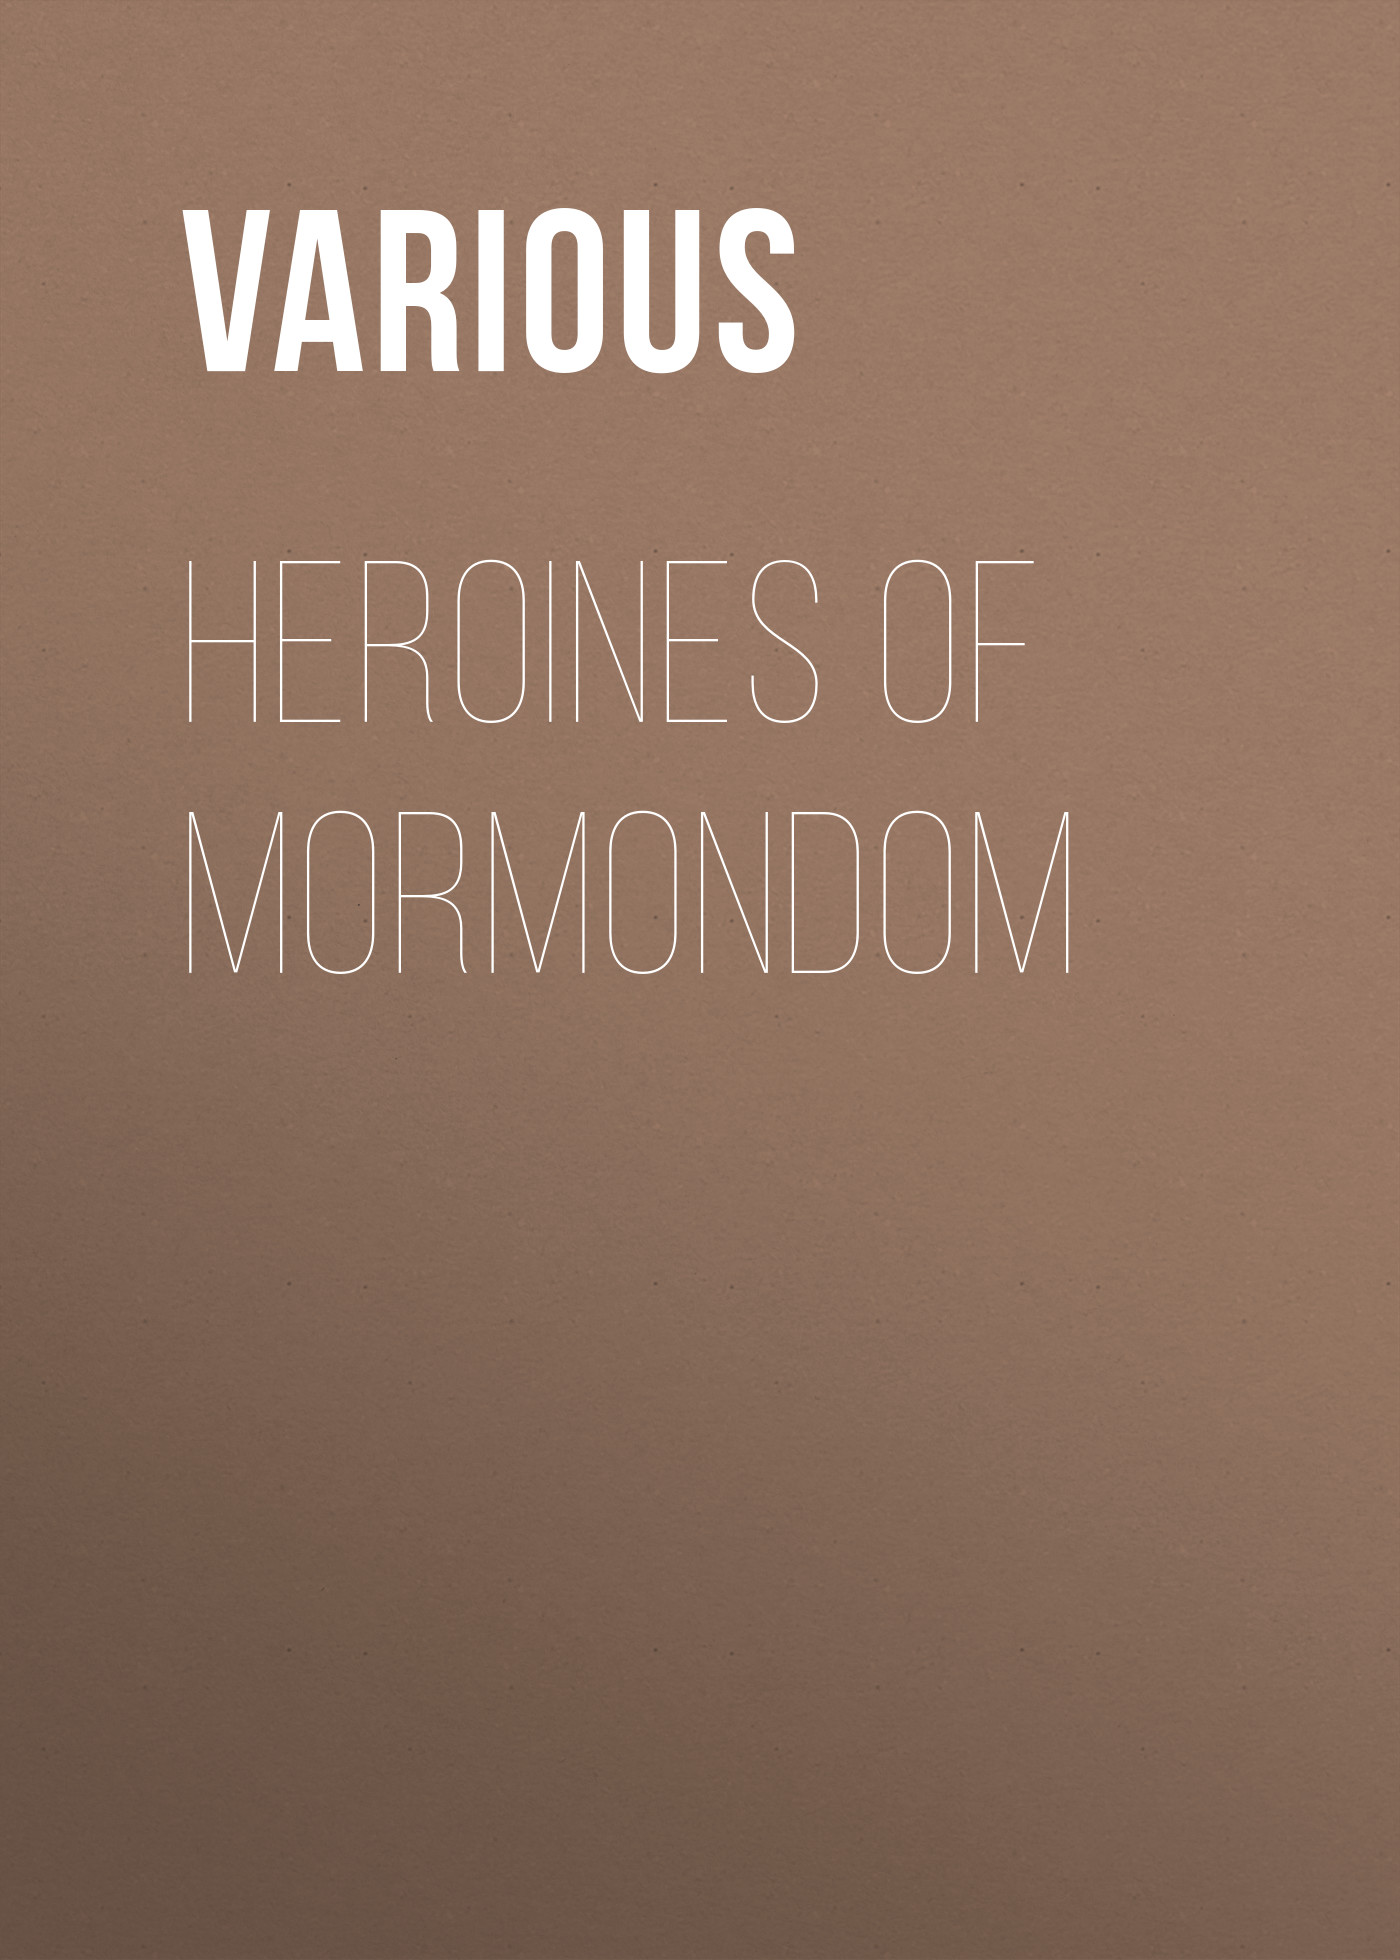 Книга Heroines of Mormondom из серии , созданная  Various, может относится к жанру Зарубежная классика. Стоимость электронной книги Heroines of Mormondom с идентификатором 25717081 составляет 0 руб.